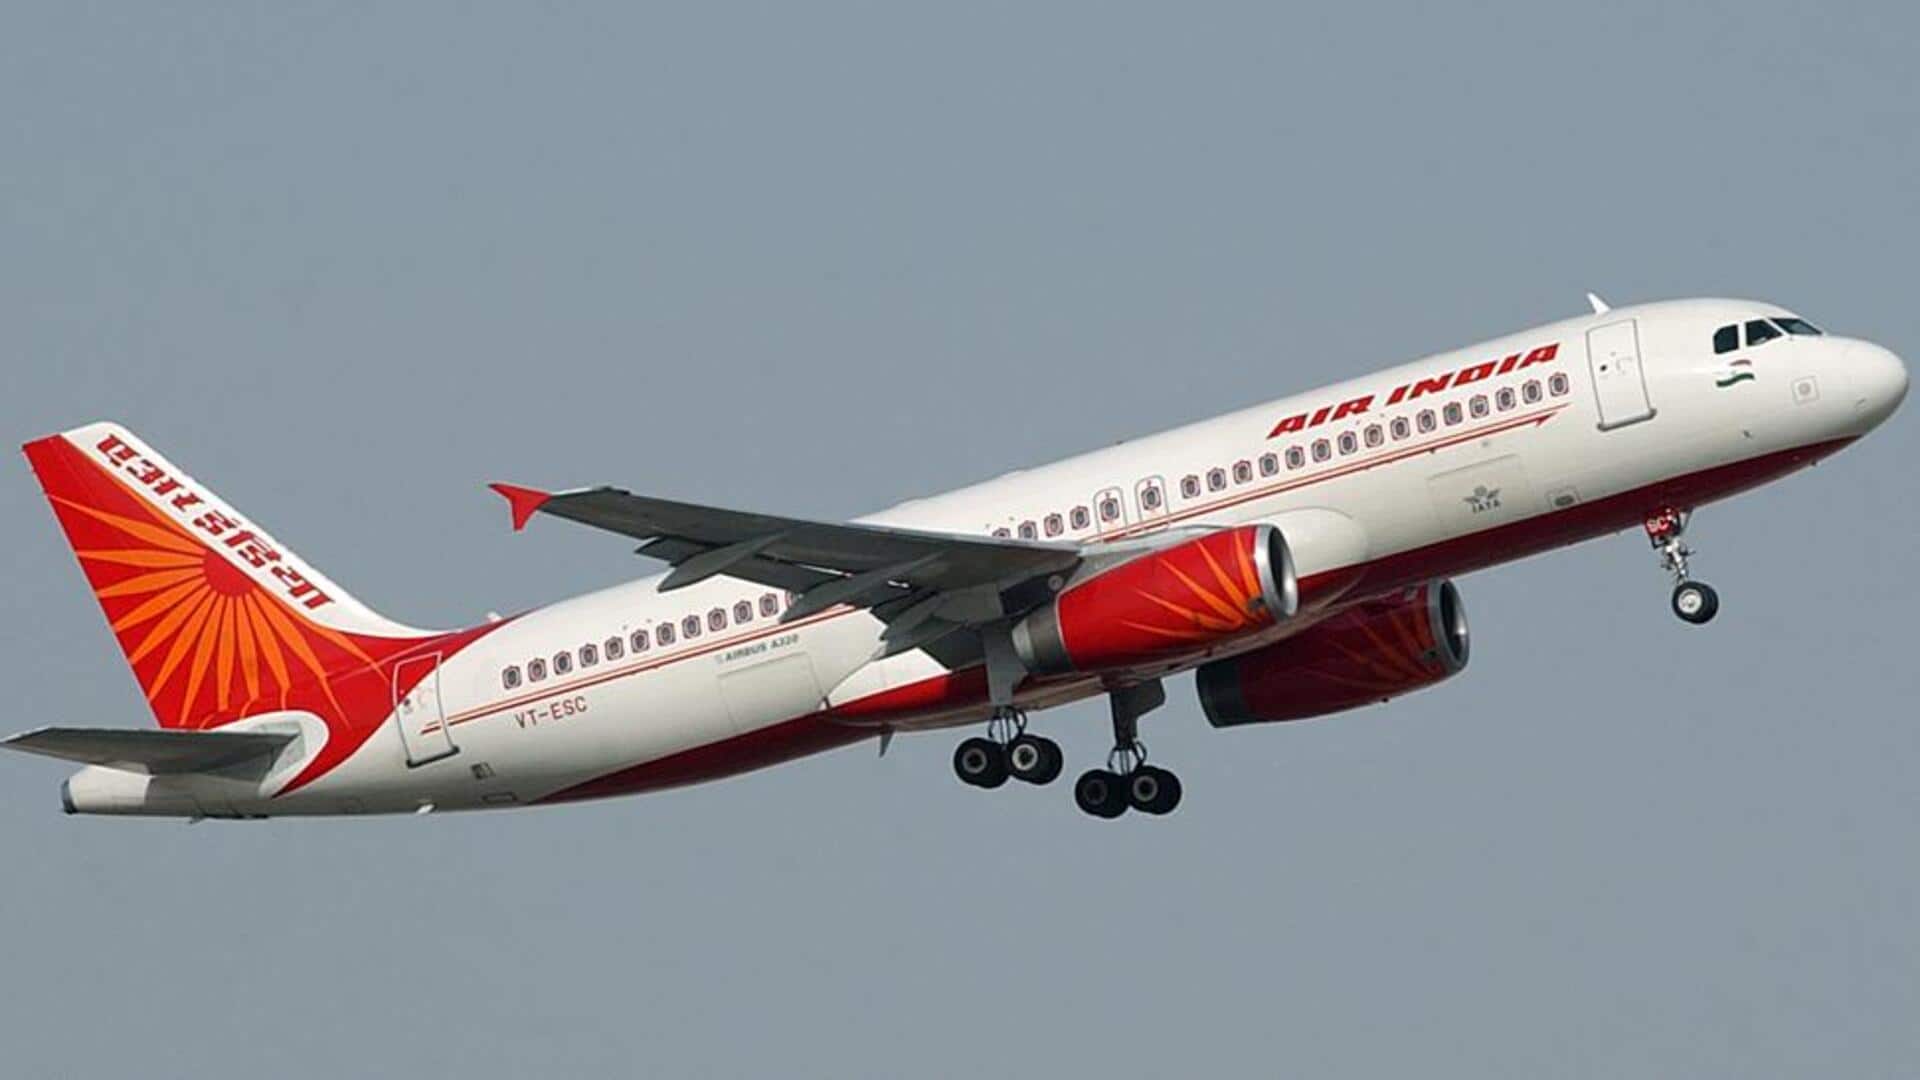 एयर इंडिया की फ्लाइट में यात्री ने की चालक दल के सदस्यों से अभद्रता और मारपीट